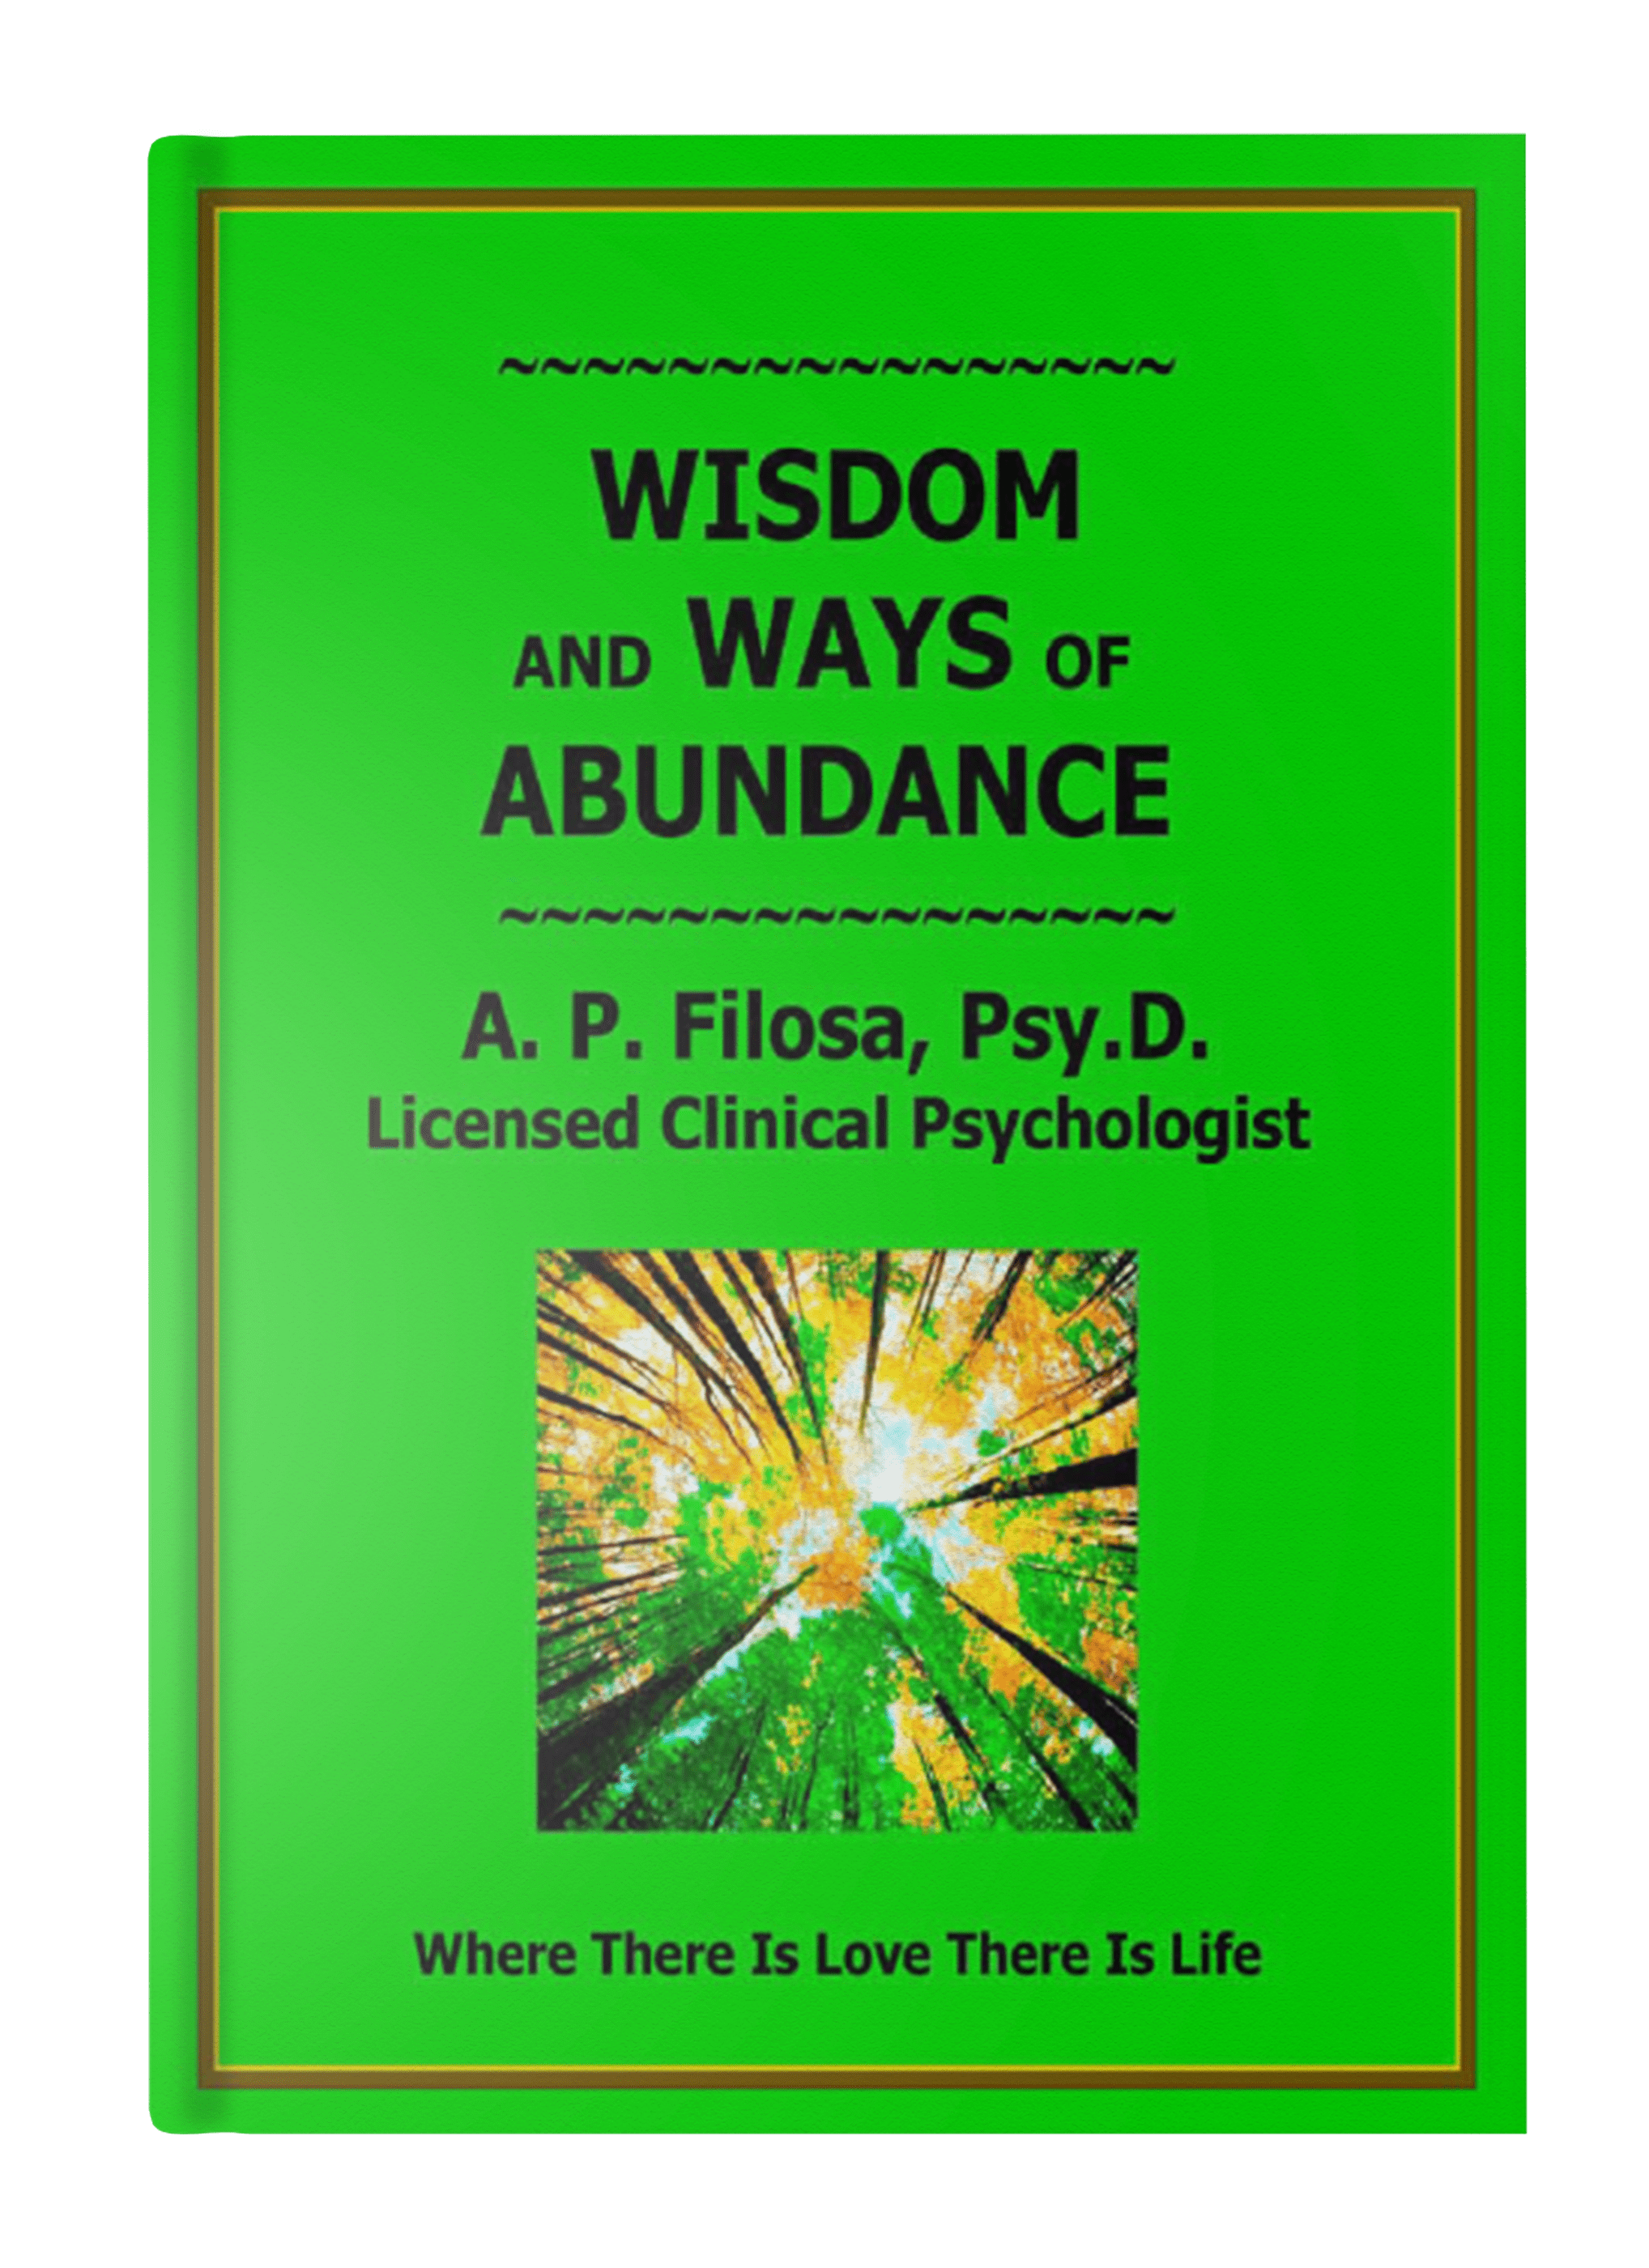 Wisdom and ways of Abundance